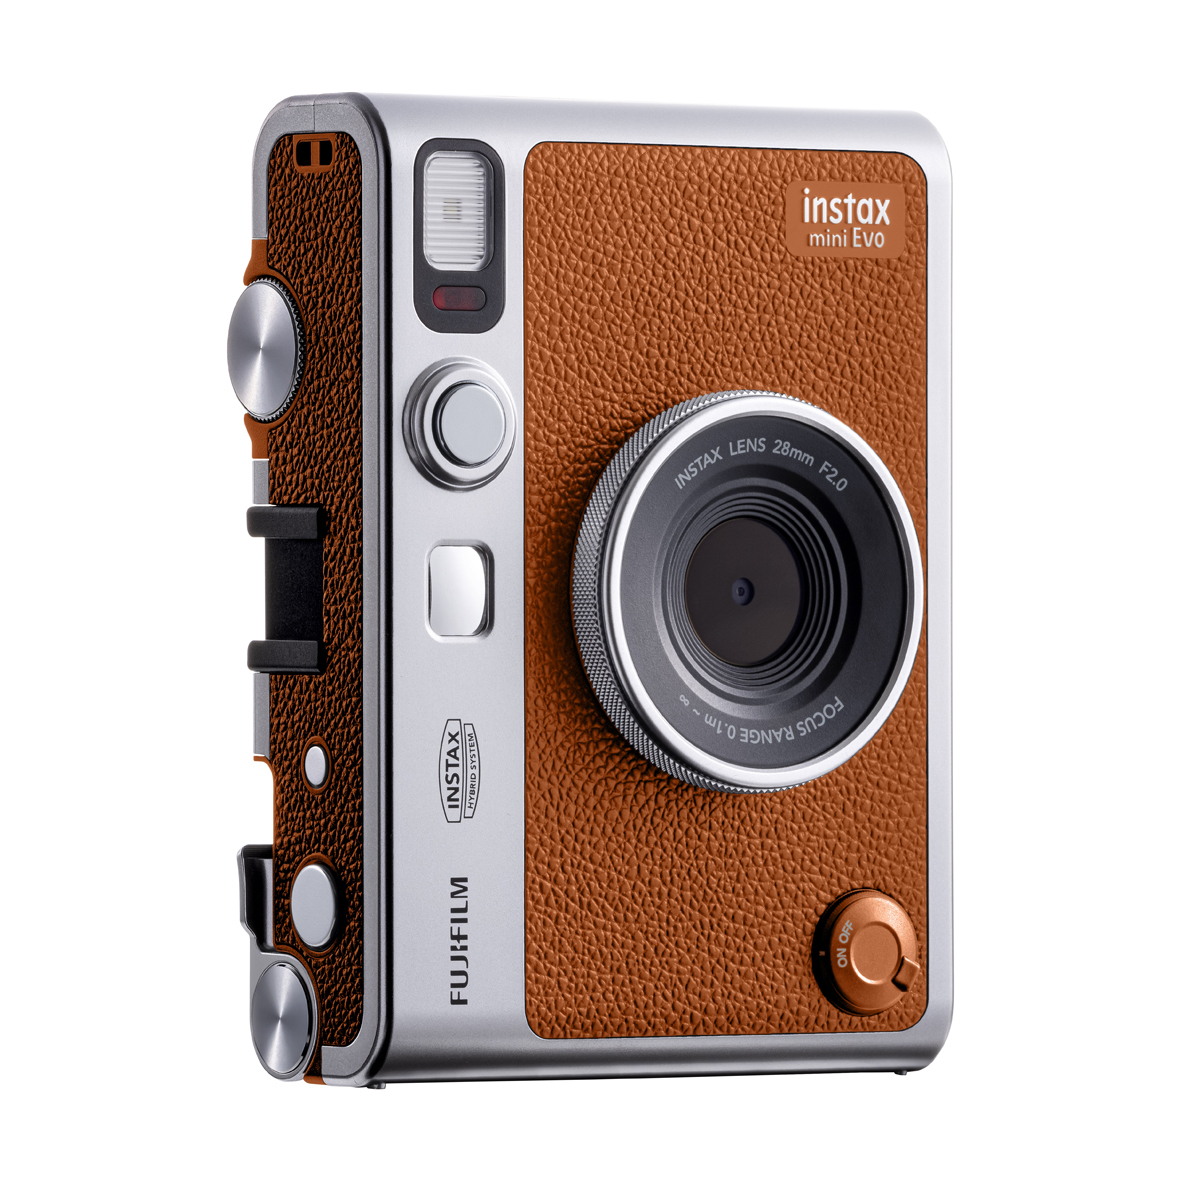 Fujifilm Instax mini EVO Hybridkamera in Braun, Ansicht Schräg vorne links